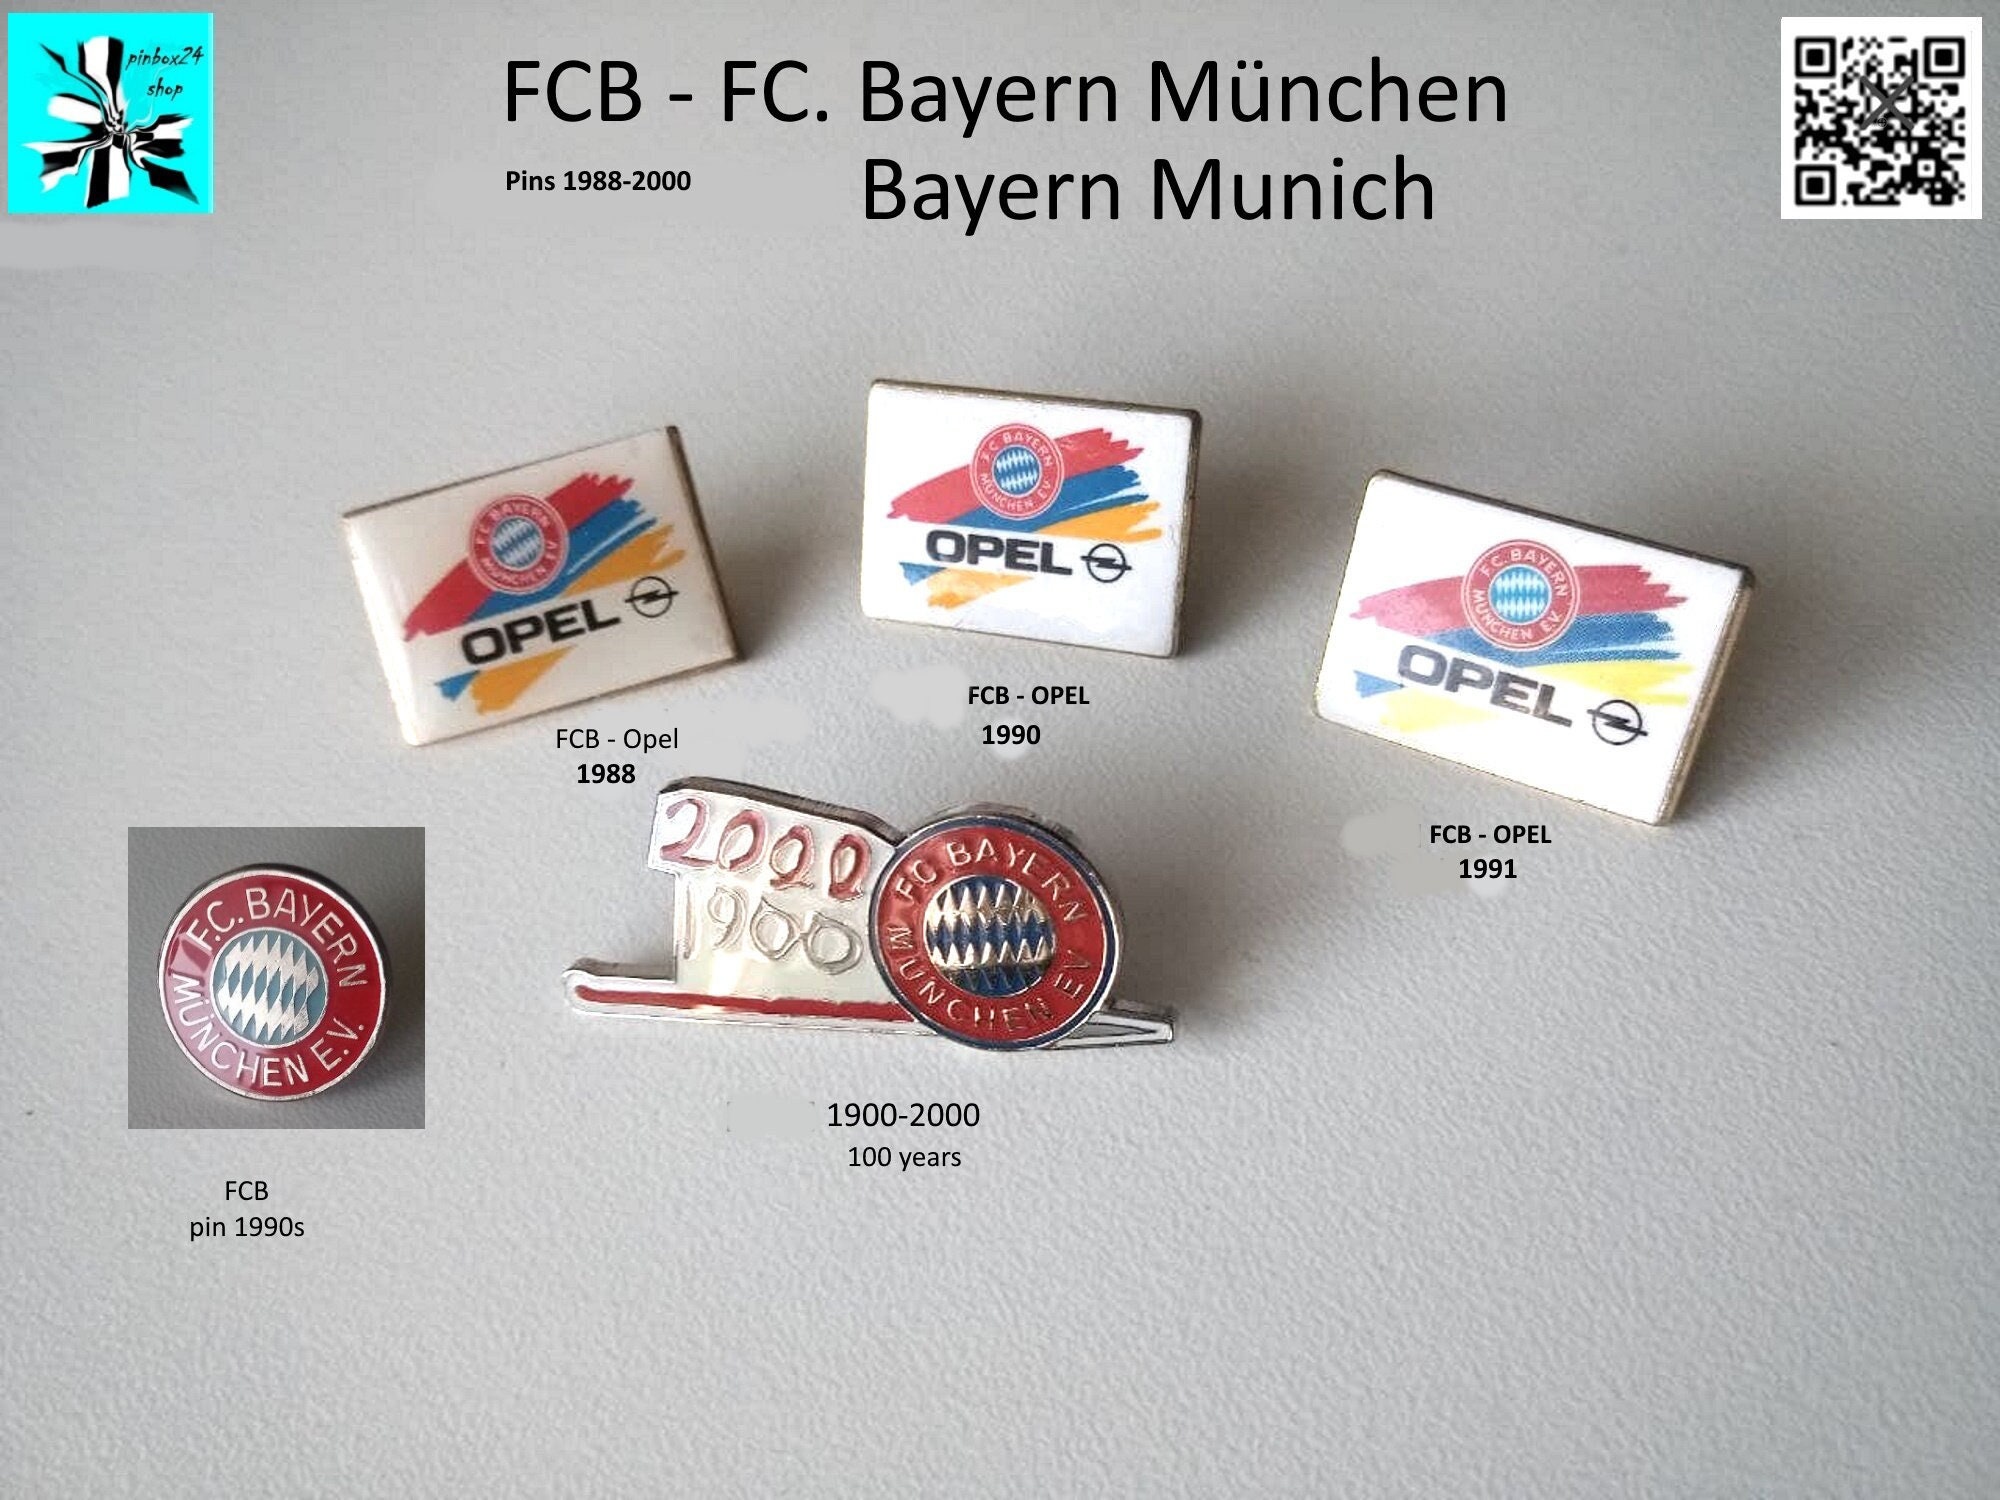 FCB FC Bayern Munich FCB Opel Sponsor Pins 1988-2000 - Etsy